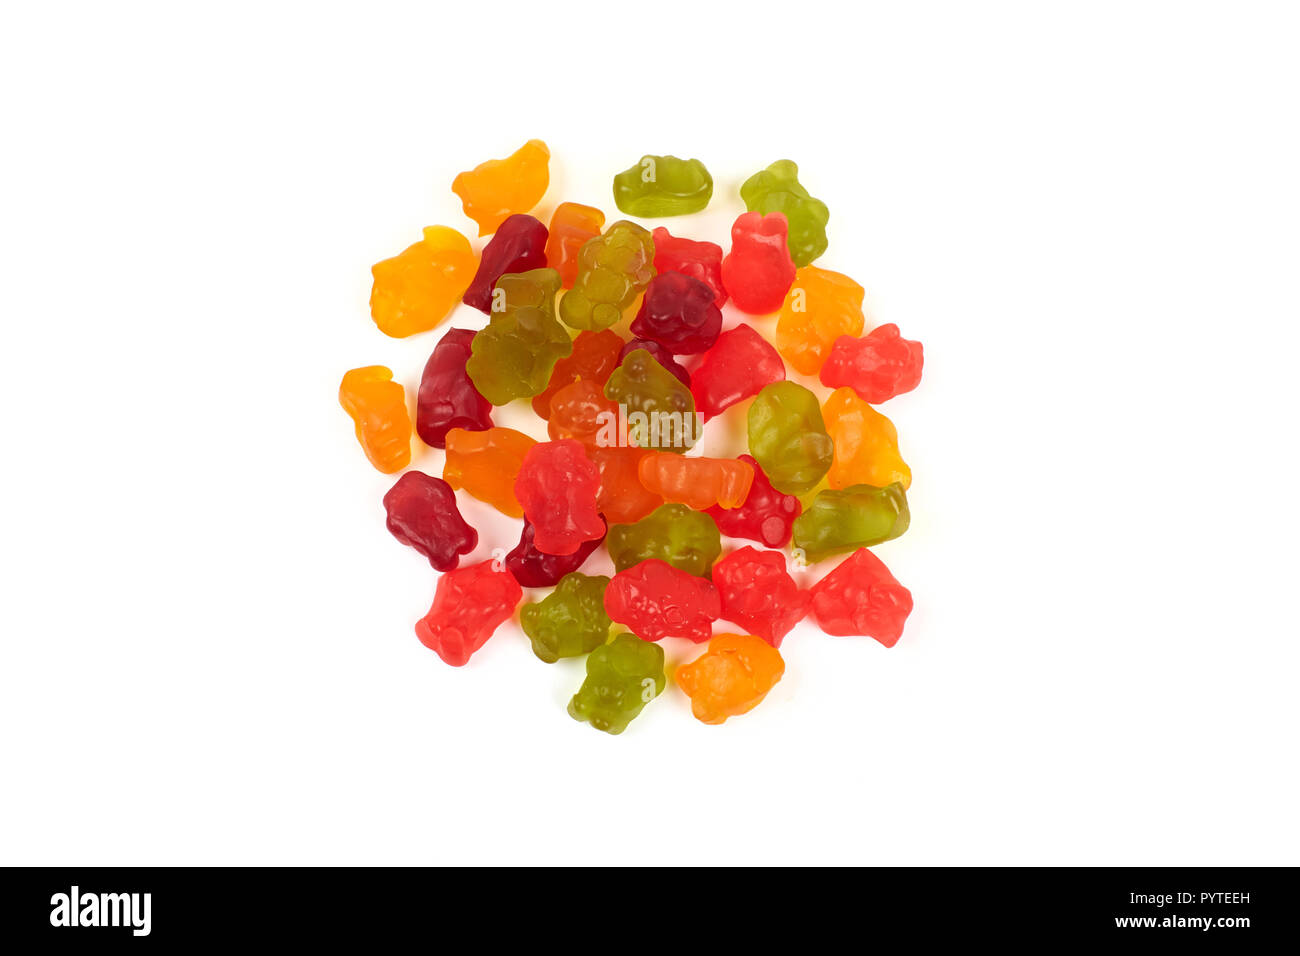 Mangez Coloré ours gommeux jelly candy, isolé sur fond blanc Banque D'Images